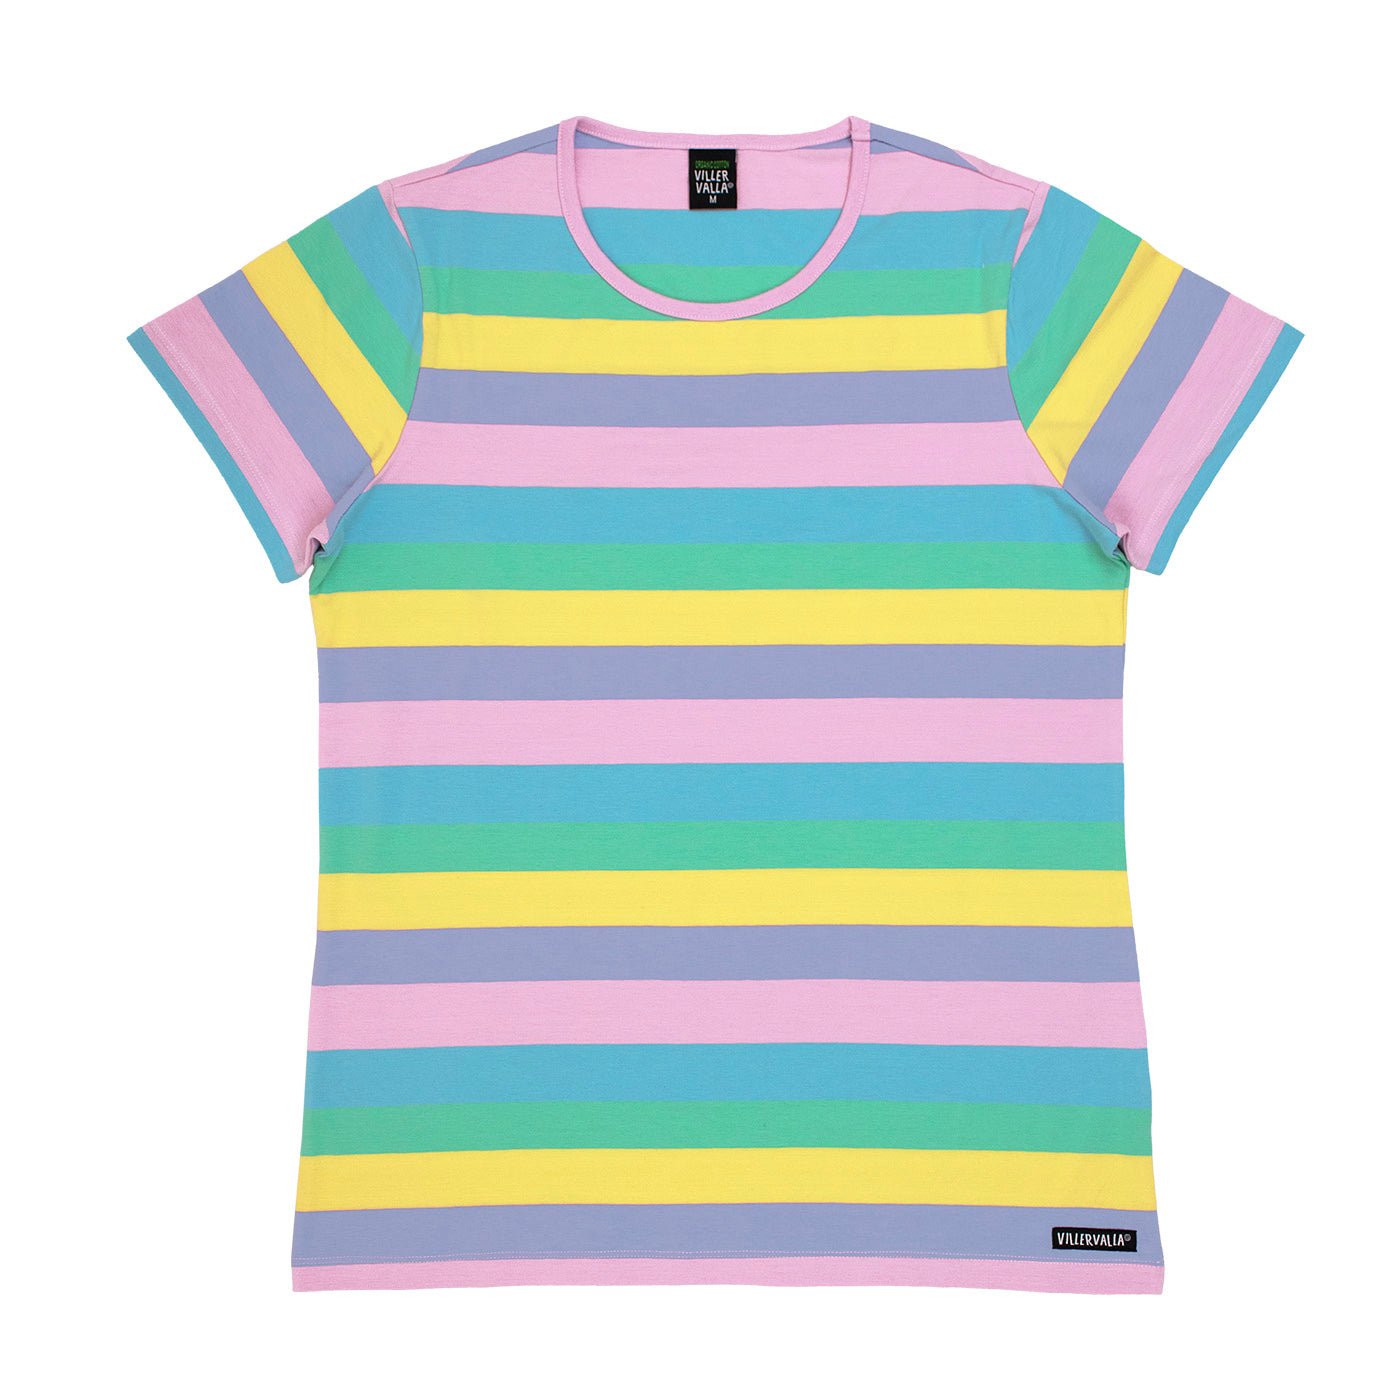 Adult's Multi Stripe Short Sleeve Shirt in Botanic - 1 Left Size S-Villervalla-Modern Rascals